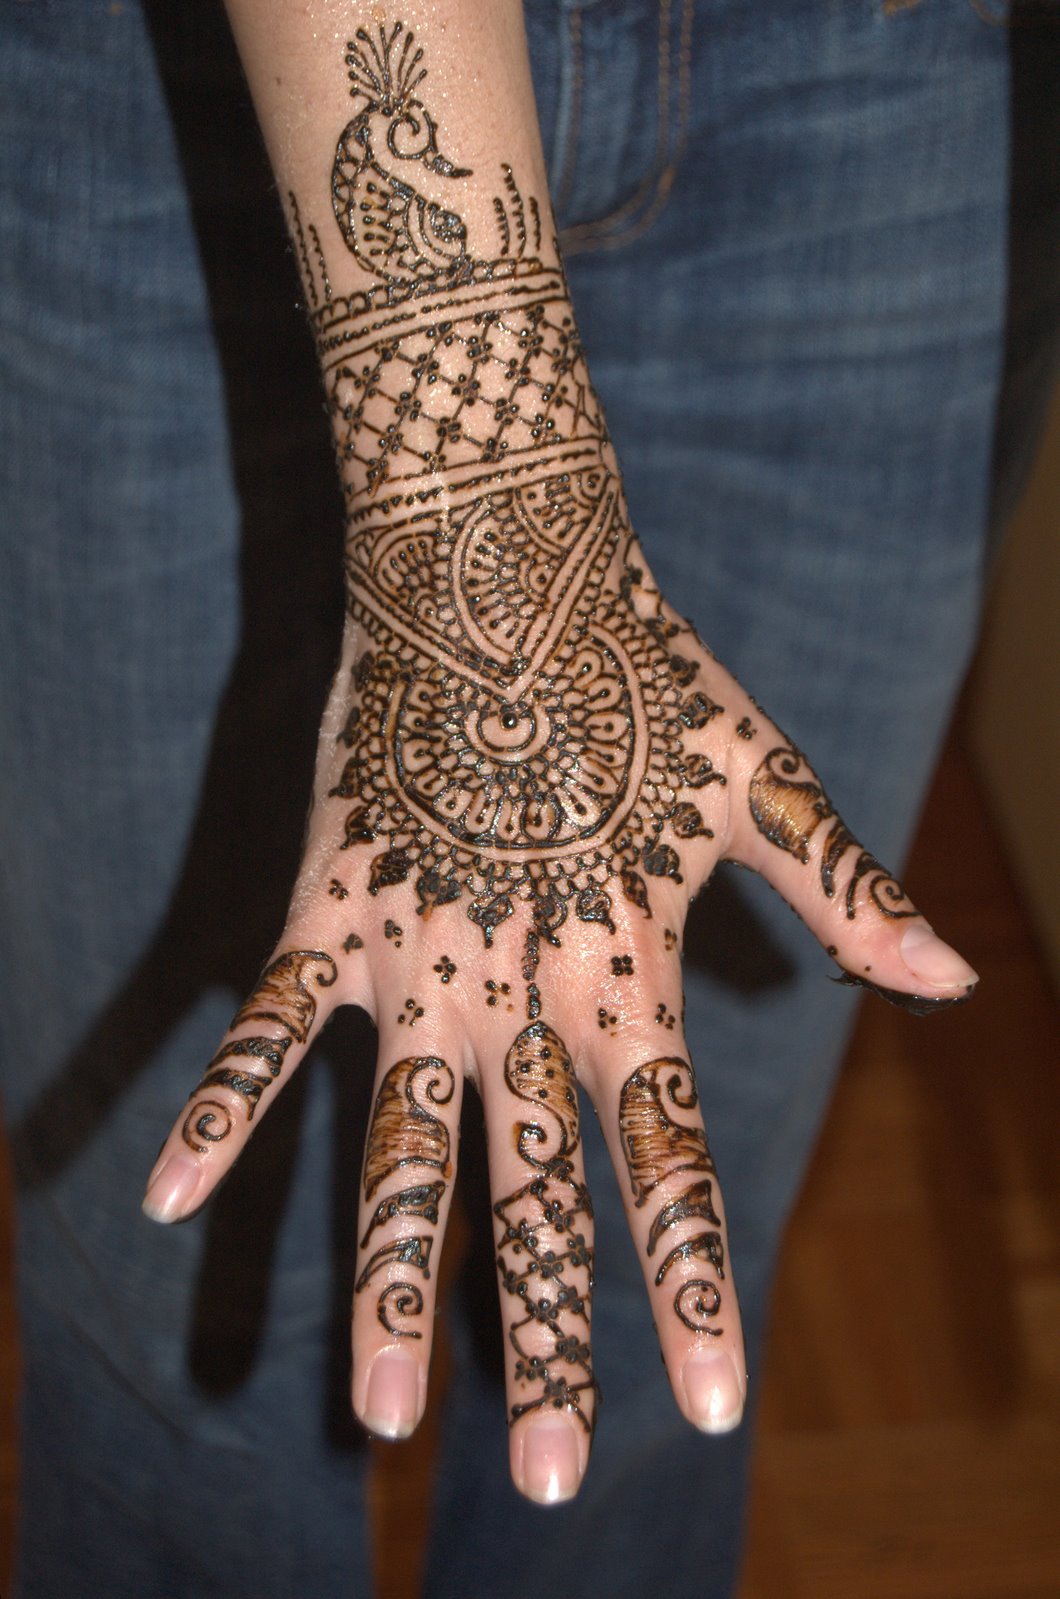 http://www.yusrablog.com/wp-content/uploads/2010/11/New-Henna-Mehndi-Design-for-Eid.jpg